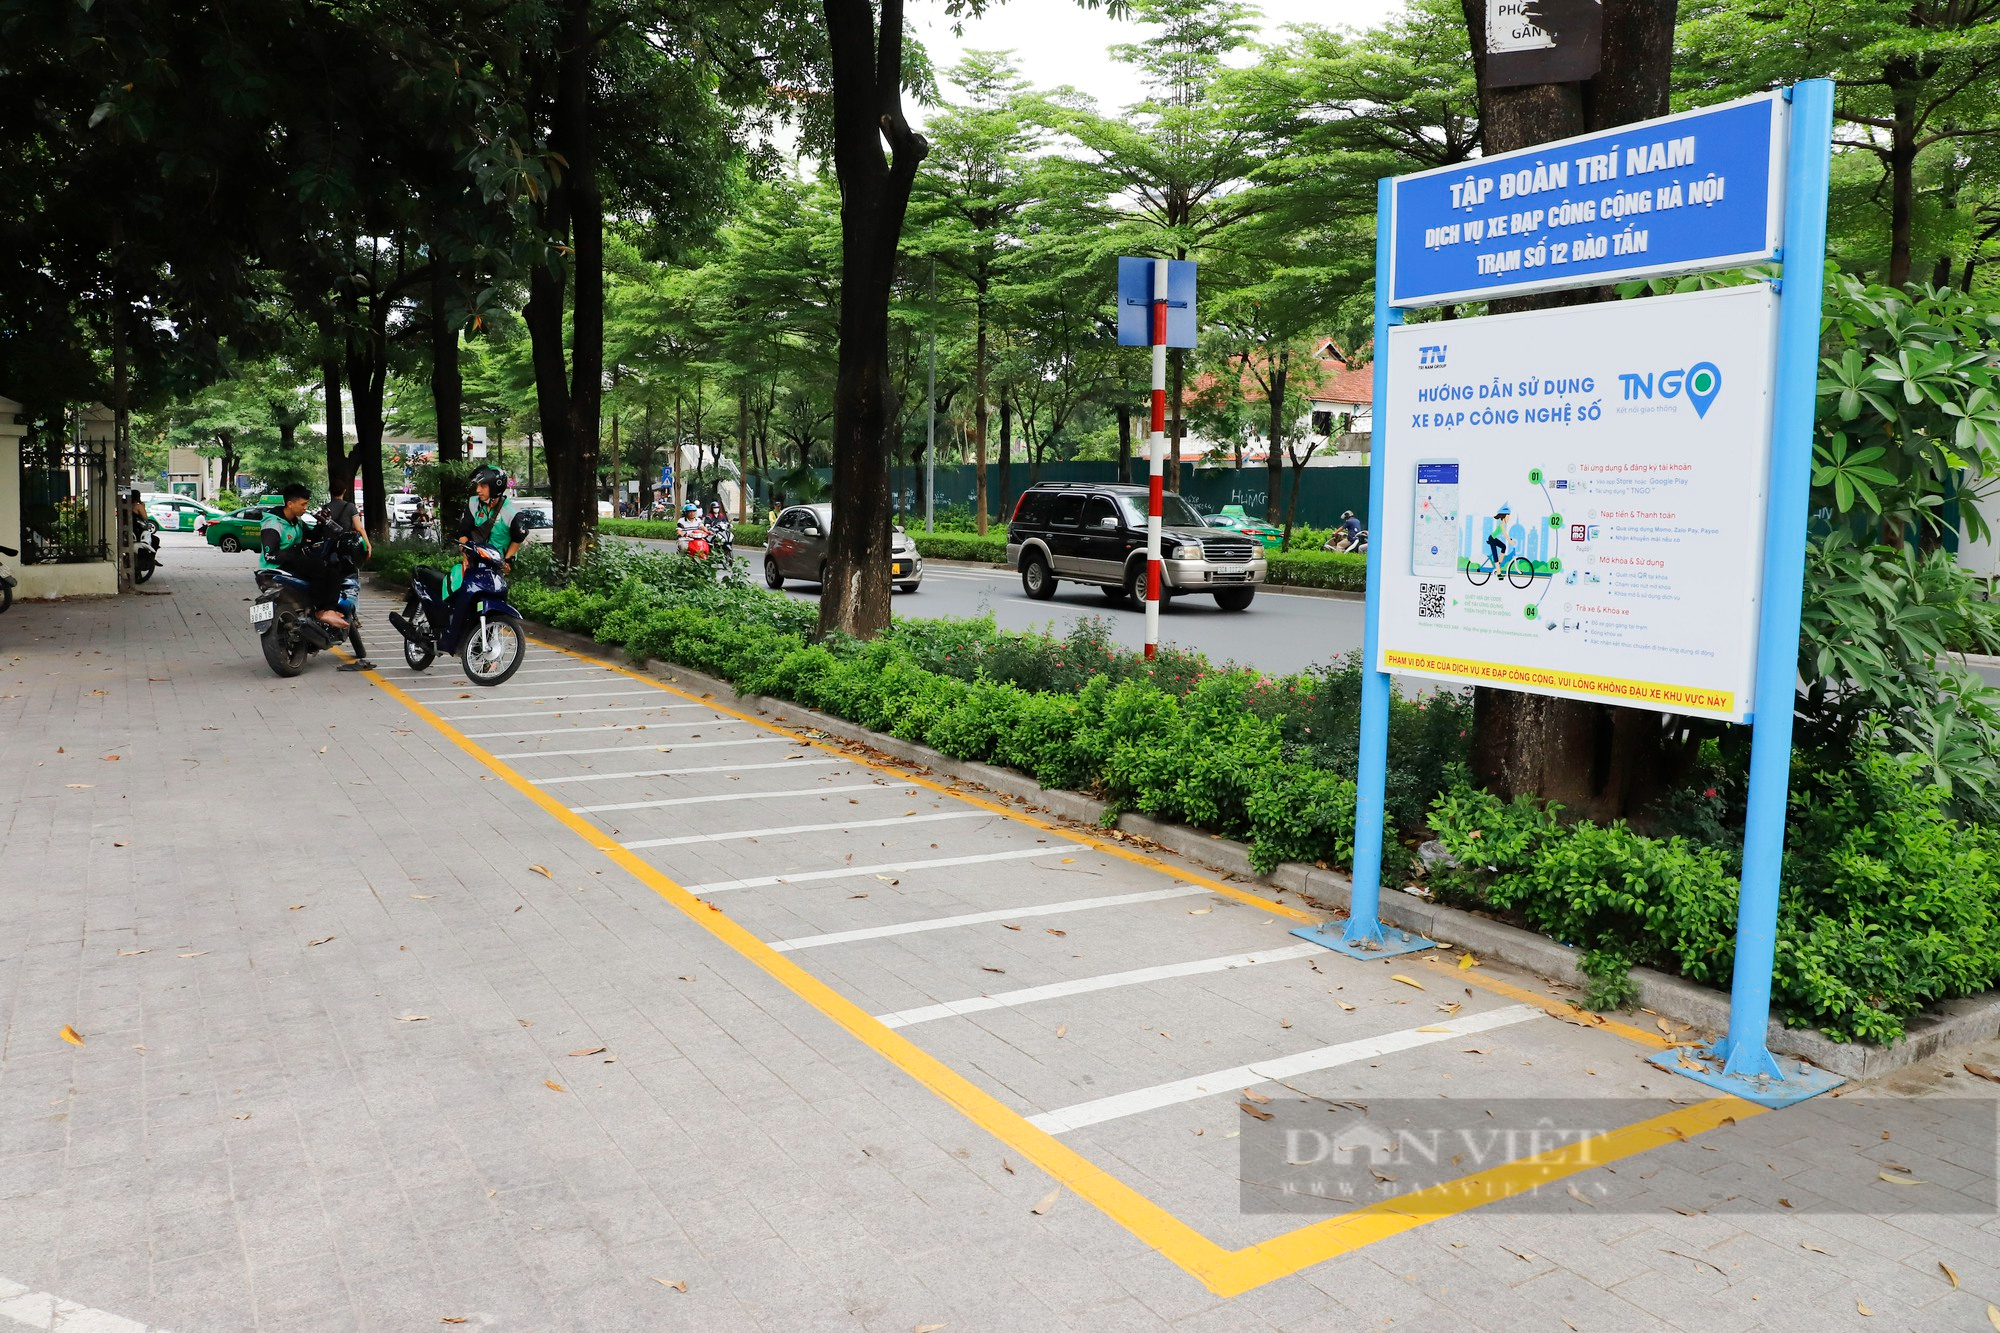 Hàng loạt trạm xe đạp công cộng tại Hà Nội bỏ không dù người dân mong chờ từng ngày - Ảnh 1.